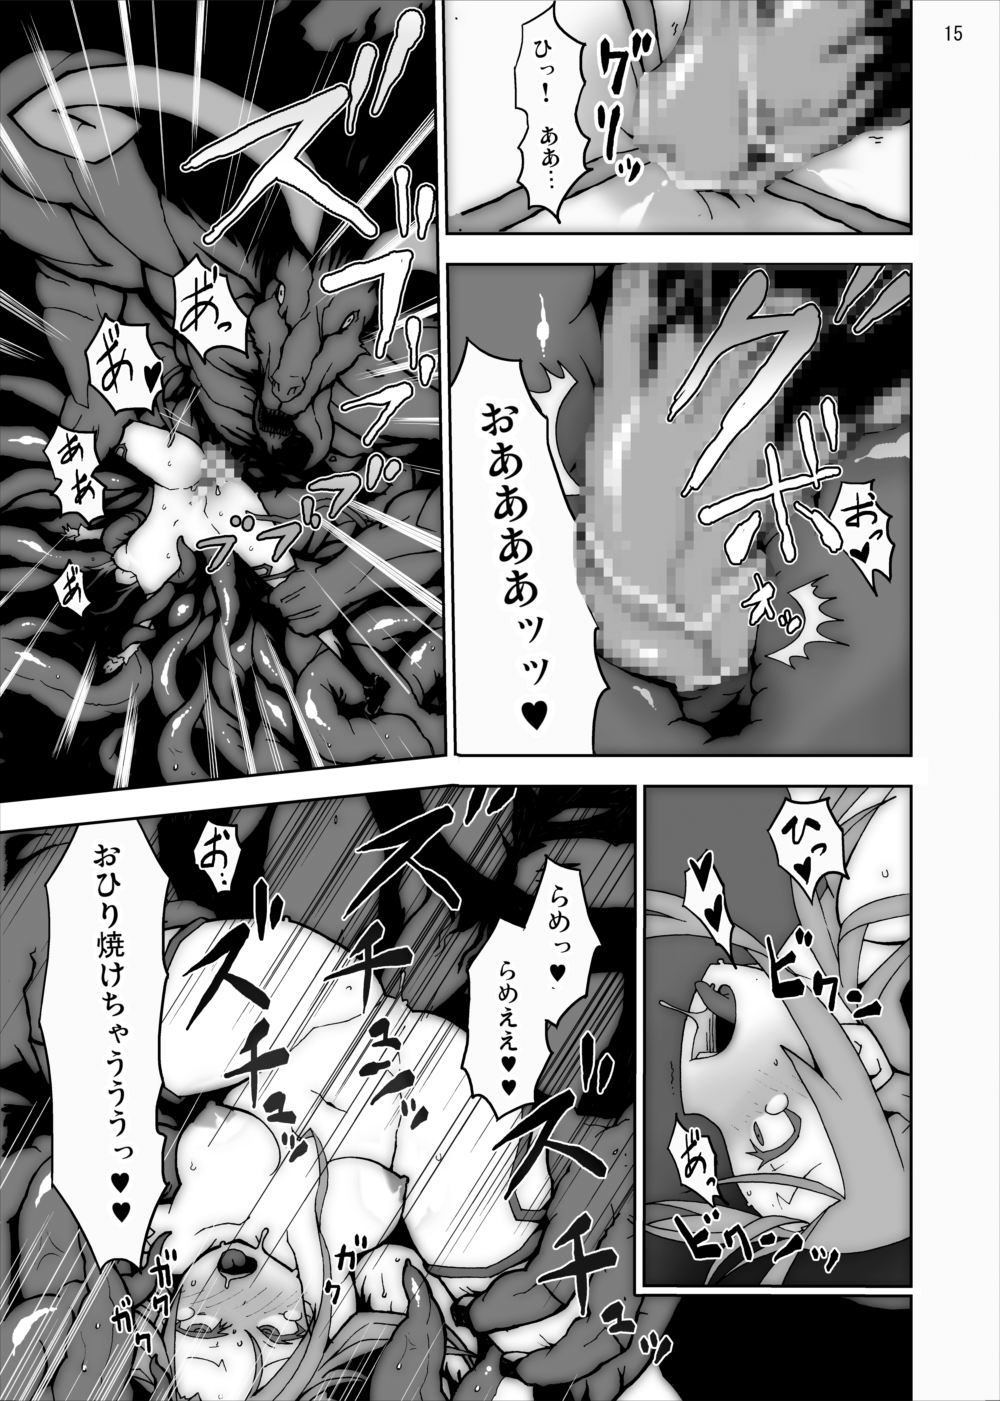 [Studio Nunchaku] Asuna in Tentacle Party Rape Online (Sword Art Online) page 14 full